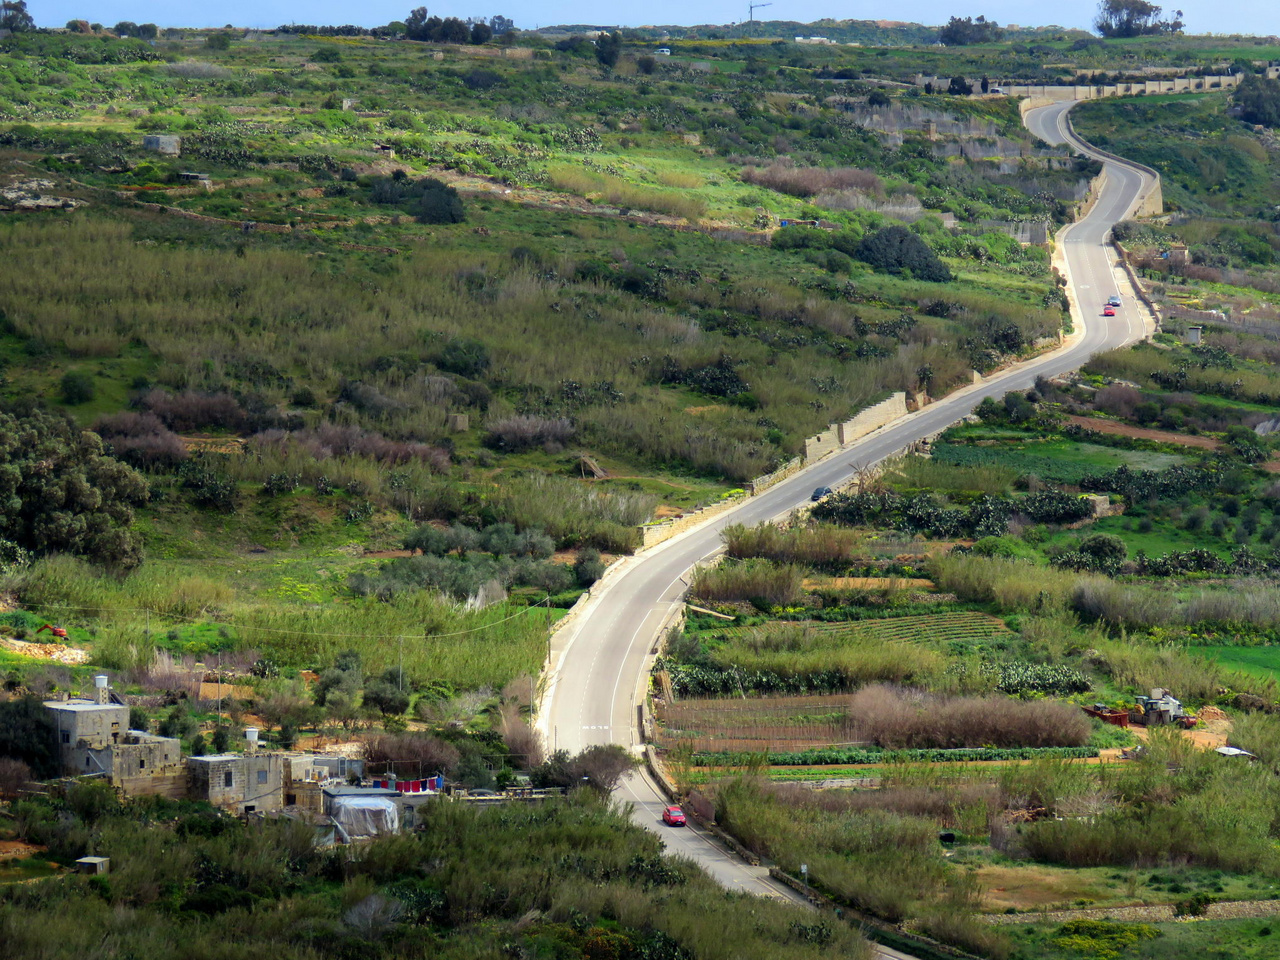 Málta sűrűn lakott, ebből következően úthálózata is sűrű. Az EU-ba történt belépés óta eltelt években sokat javult az utak minősége, ám a rengeteg autó miatt a csúcsidőszakokban például Vallettában és környékén rendszeres az erős forgalom, és előfordulnak dugók. A kisebb vidéki utak is már aszfaltosak többnyire, ám gyakran csak egy sáv szélességűek, és olykor magasra rakott terméskő falak között vezetnek, így a gyors közlekedésre alkalmatlanok. A sikátoros óvárosokban sok a keskeny, egyirányú utca, ami tovább bonyolítja a közlekedést. És akkor még nem beszéltünk a kanyarokról, pedig Máltán jóformán csak kanyarokból áll a teljes úthálózat… Képünkön: tipikus vidéki országút Gozo szigetén.